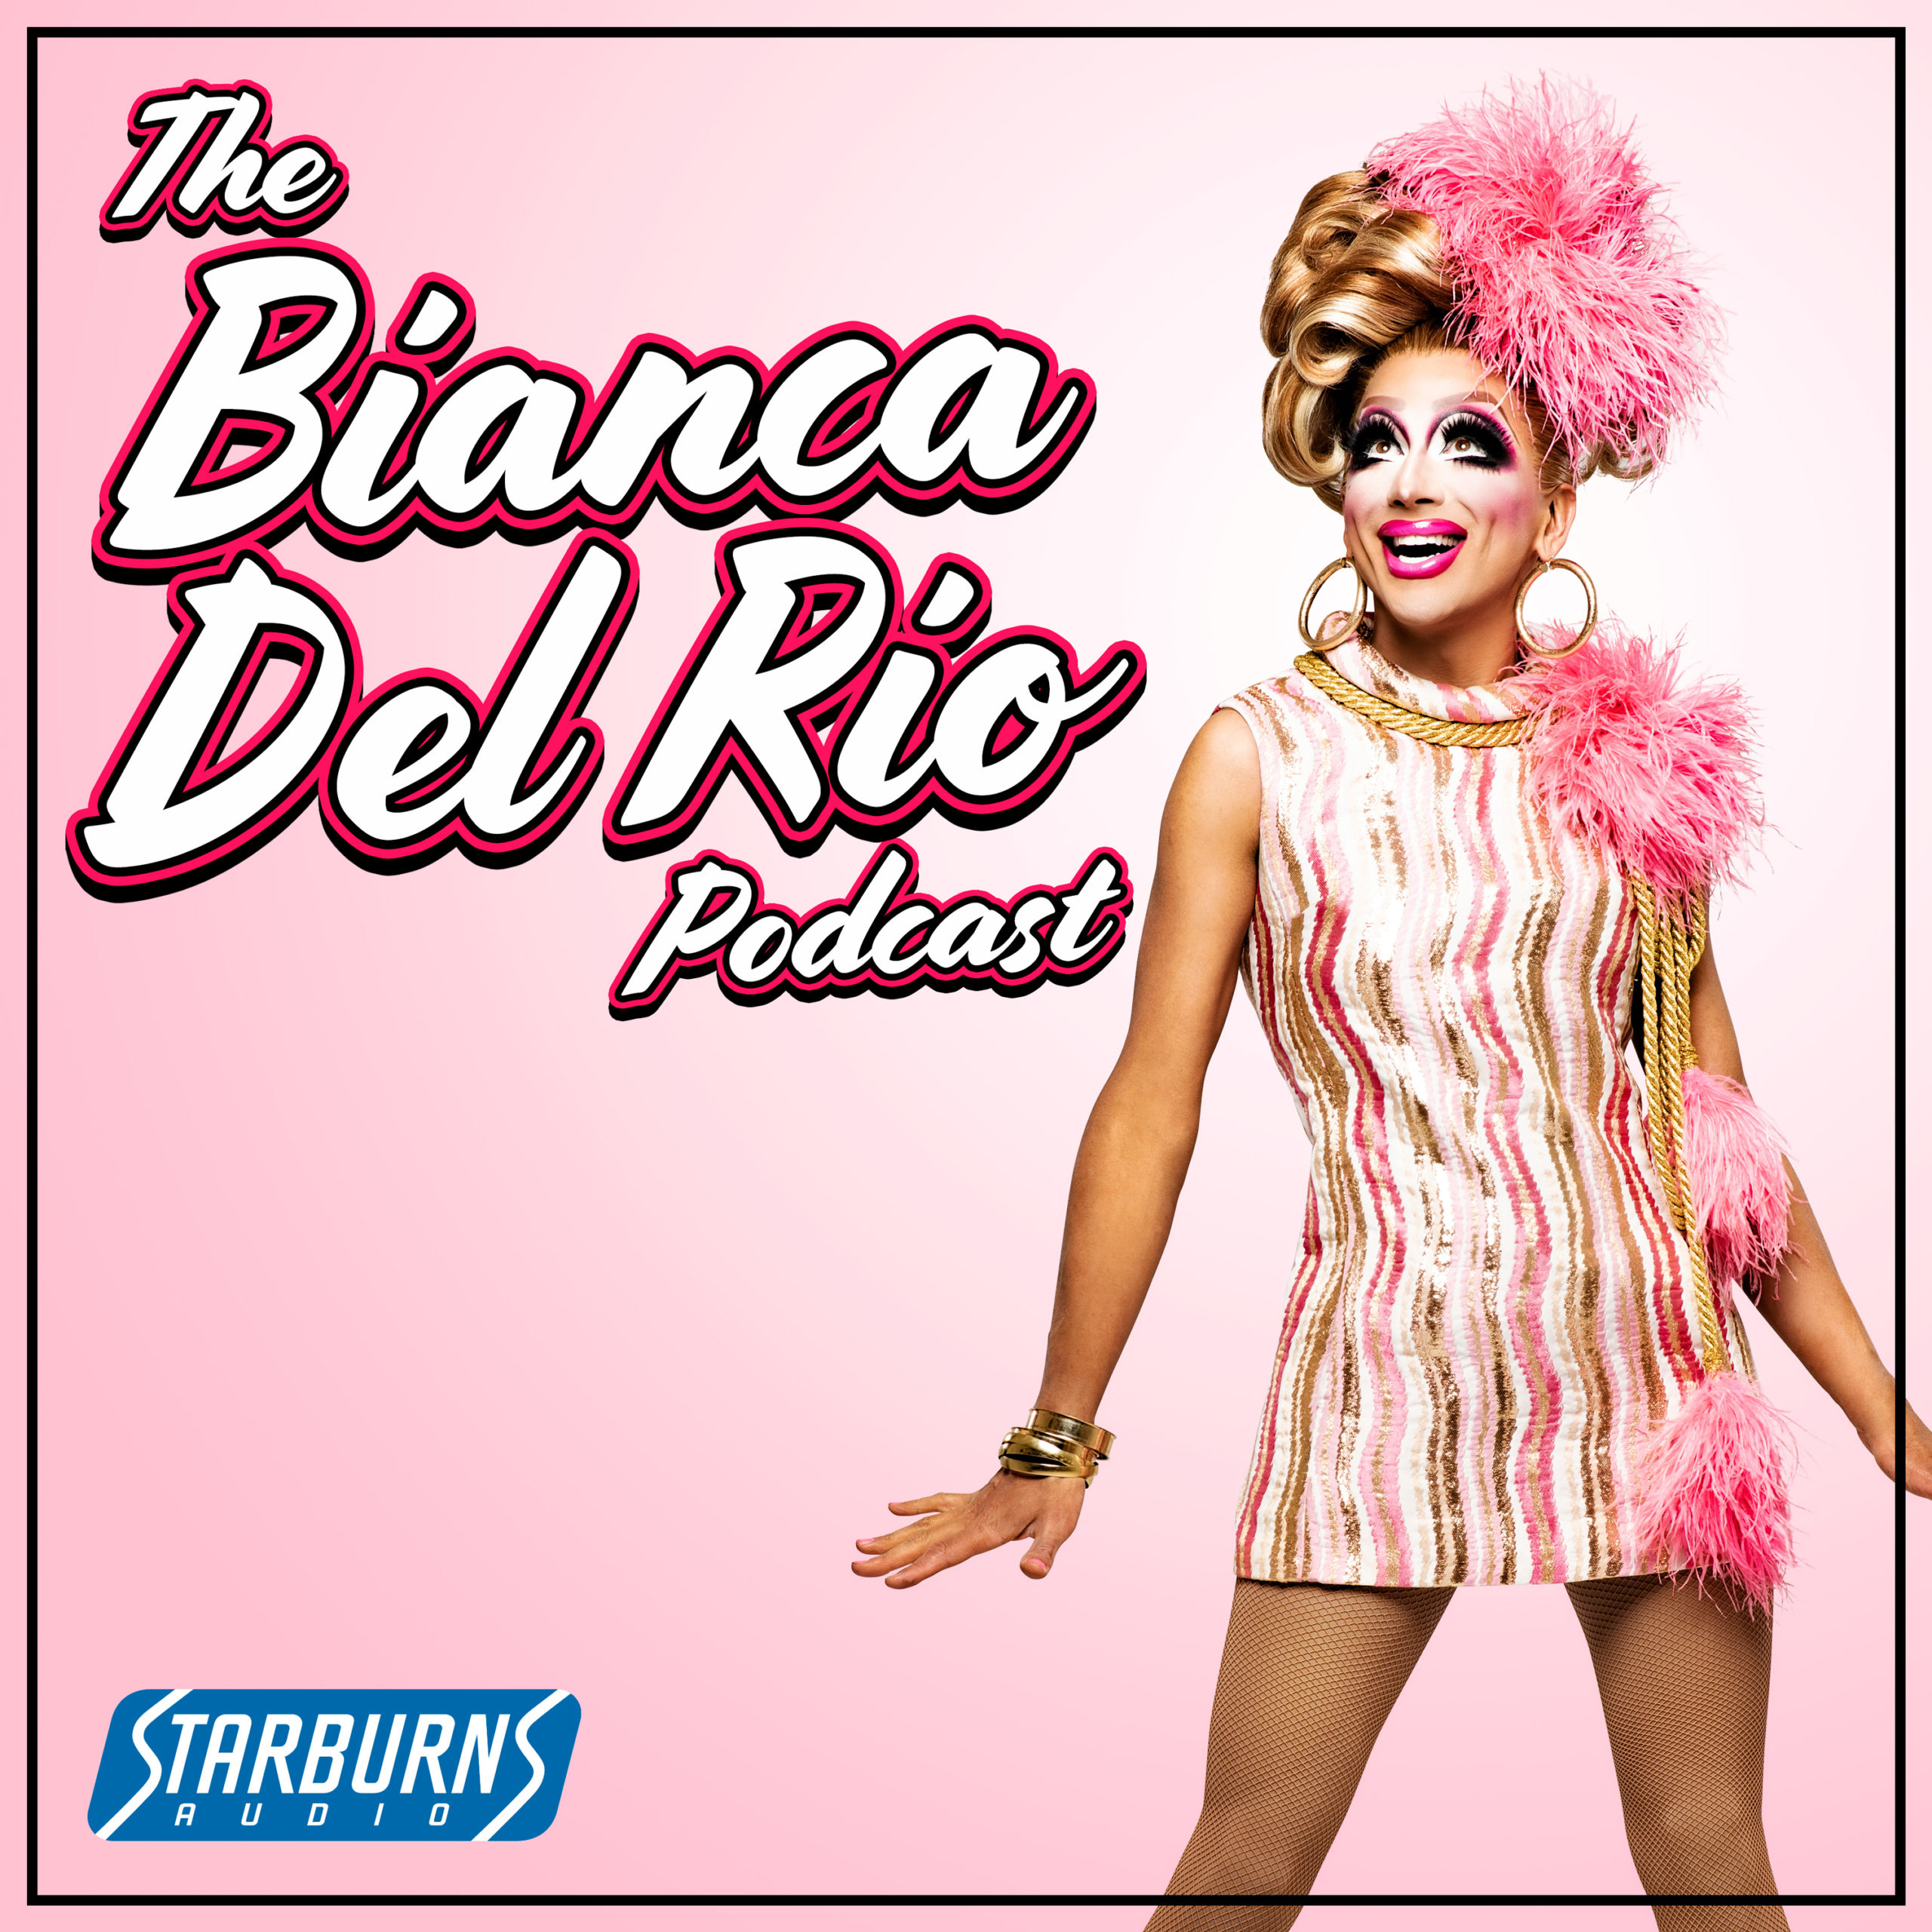 The Bianca Del Rio podcast cover